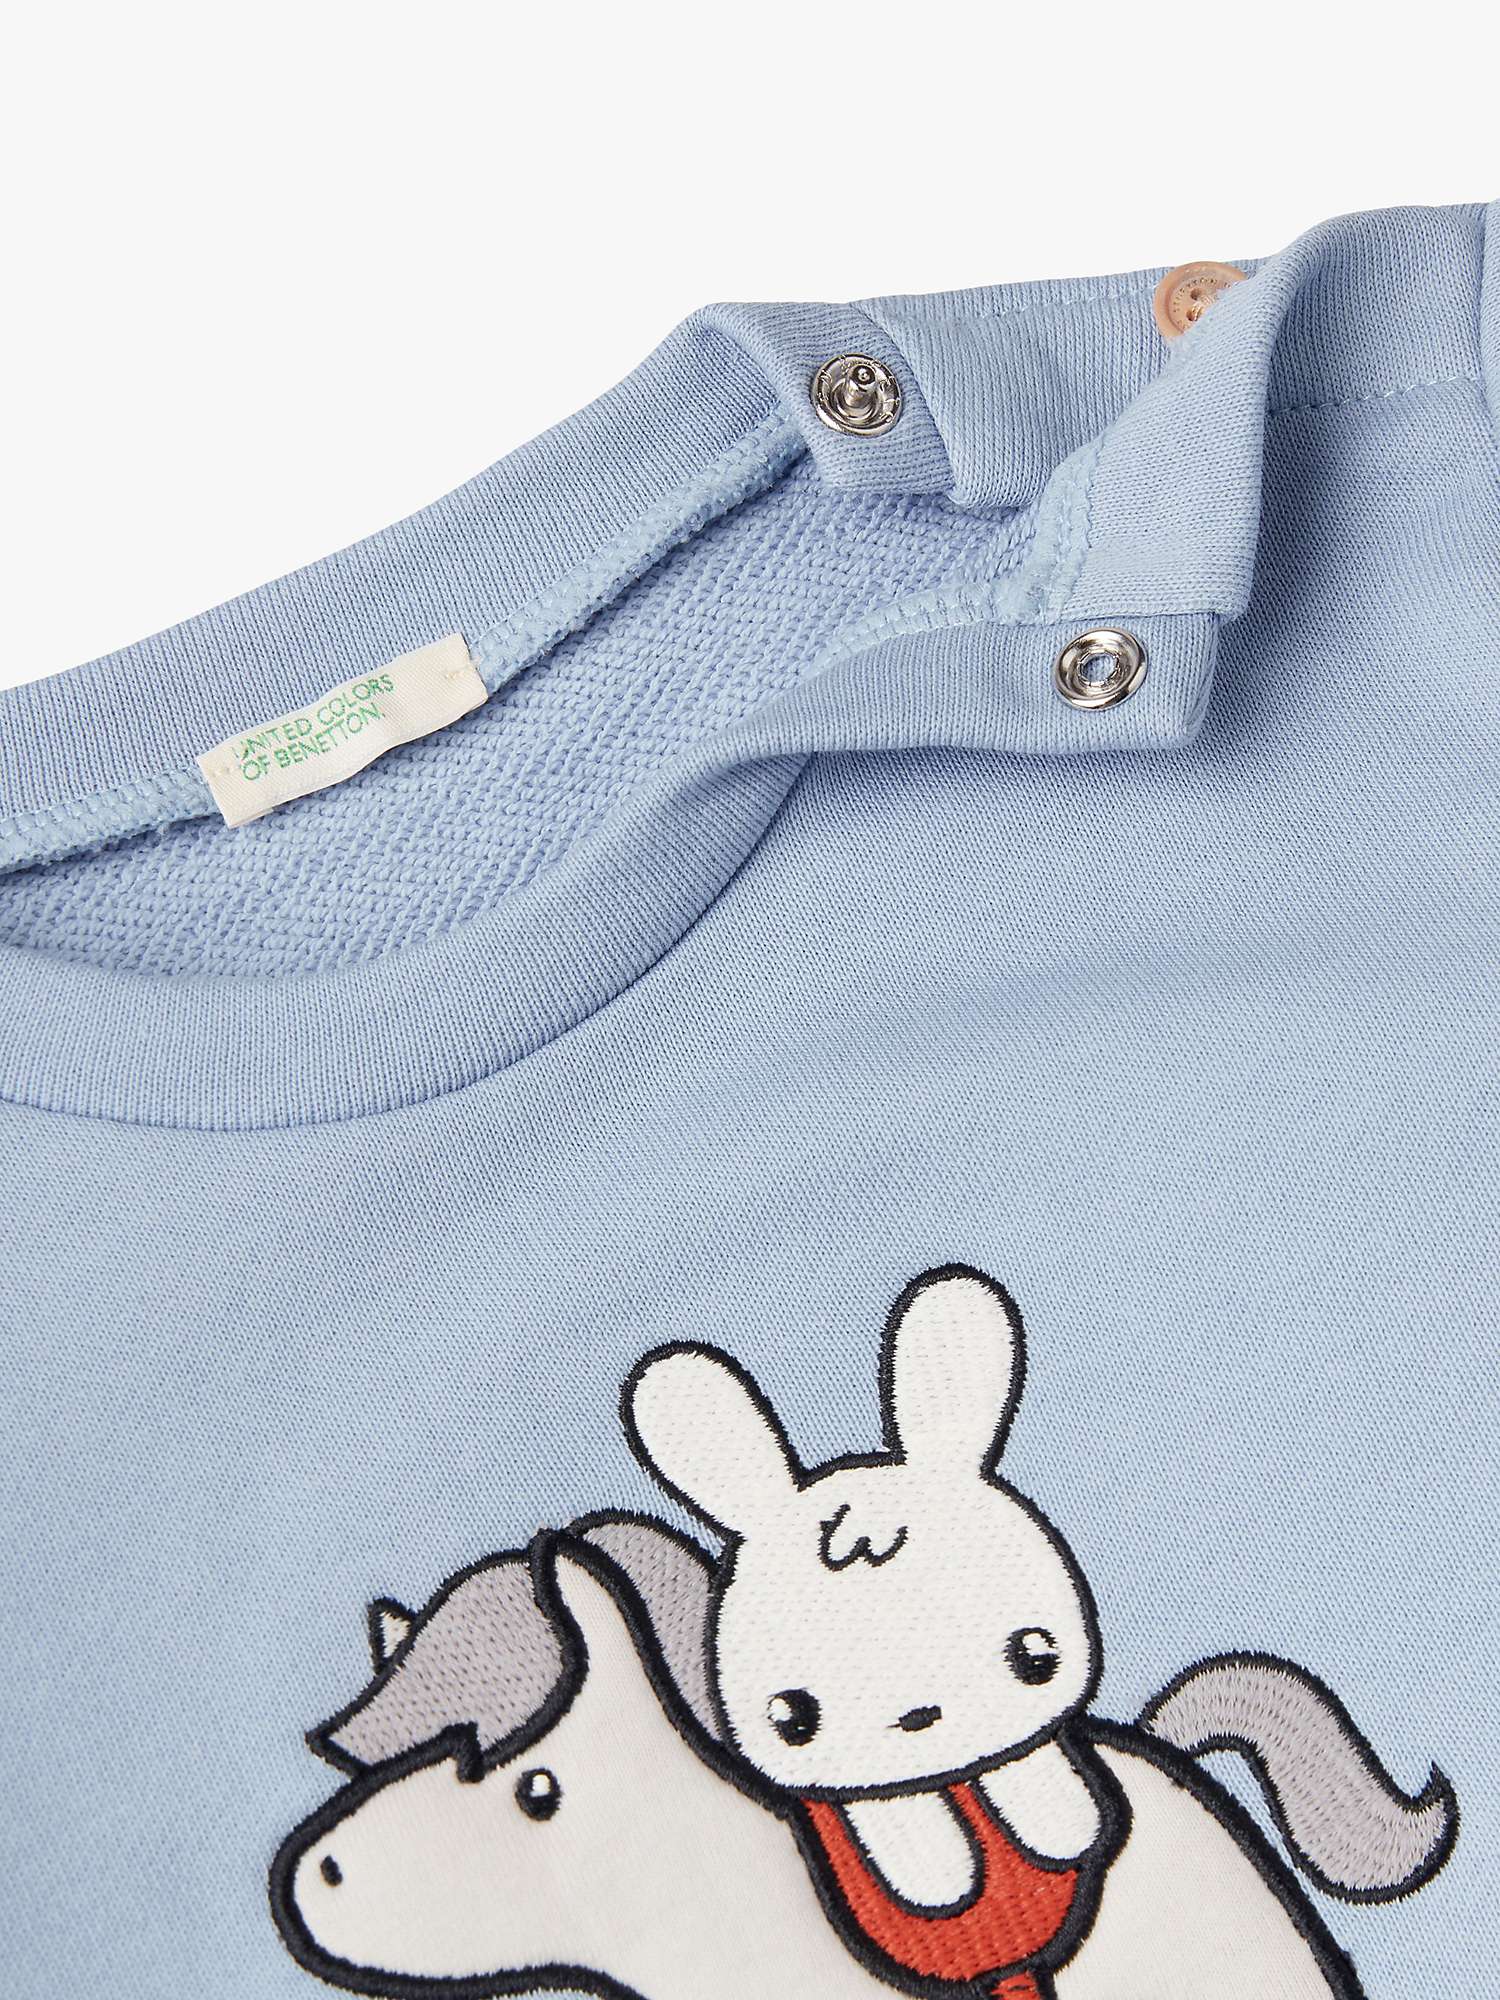 Buy Benetton Baby Bunny Applique Sweatshirt Online at johnlewis.com